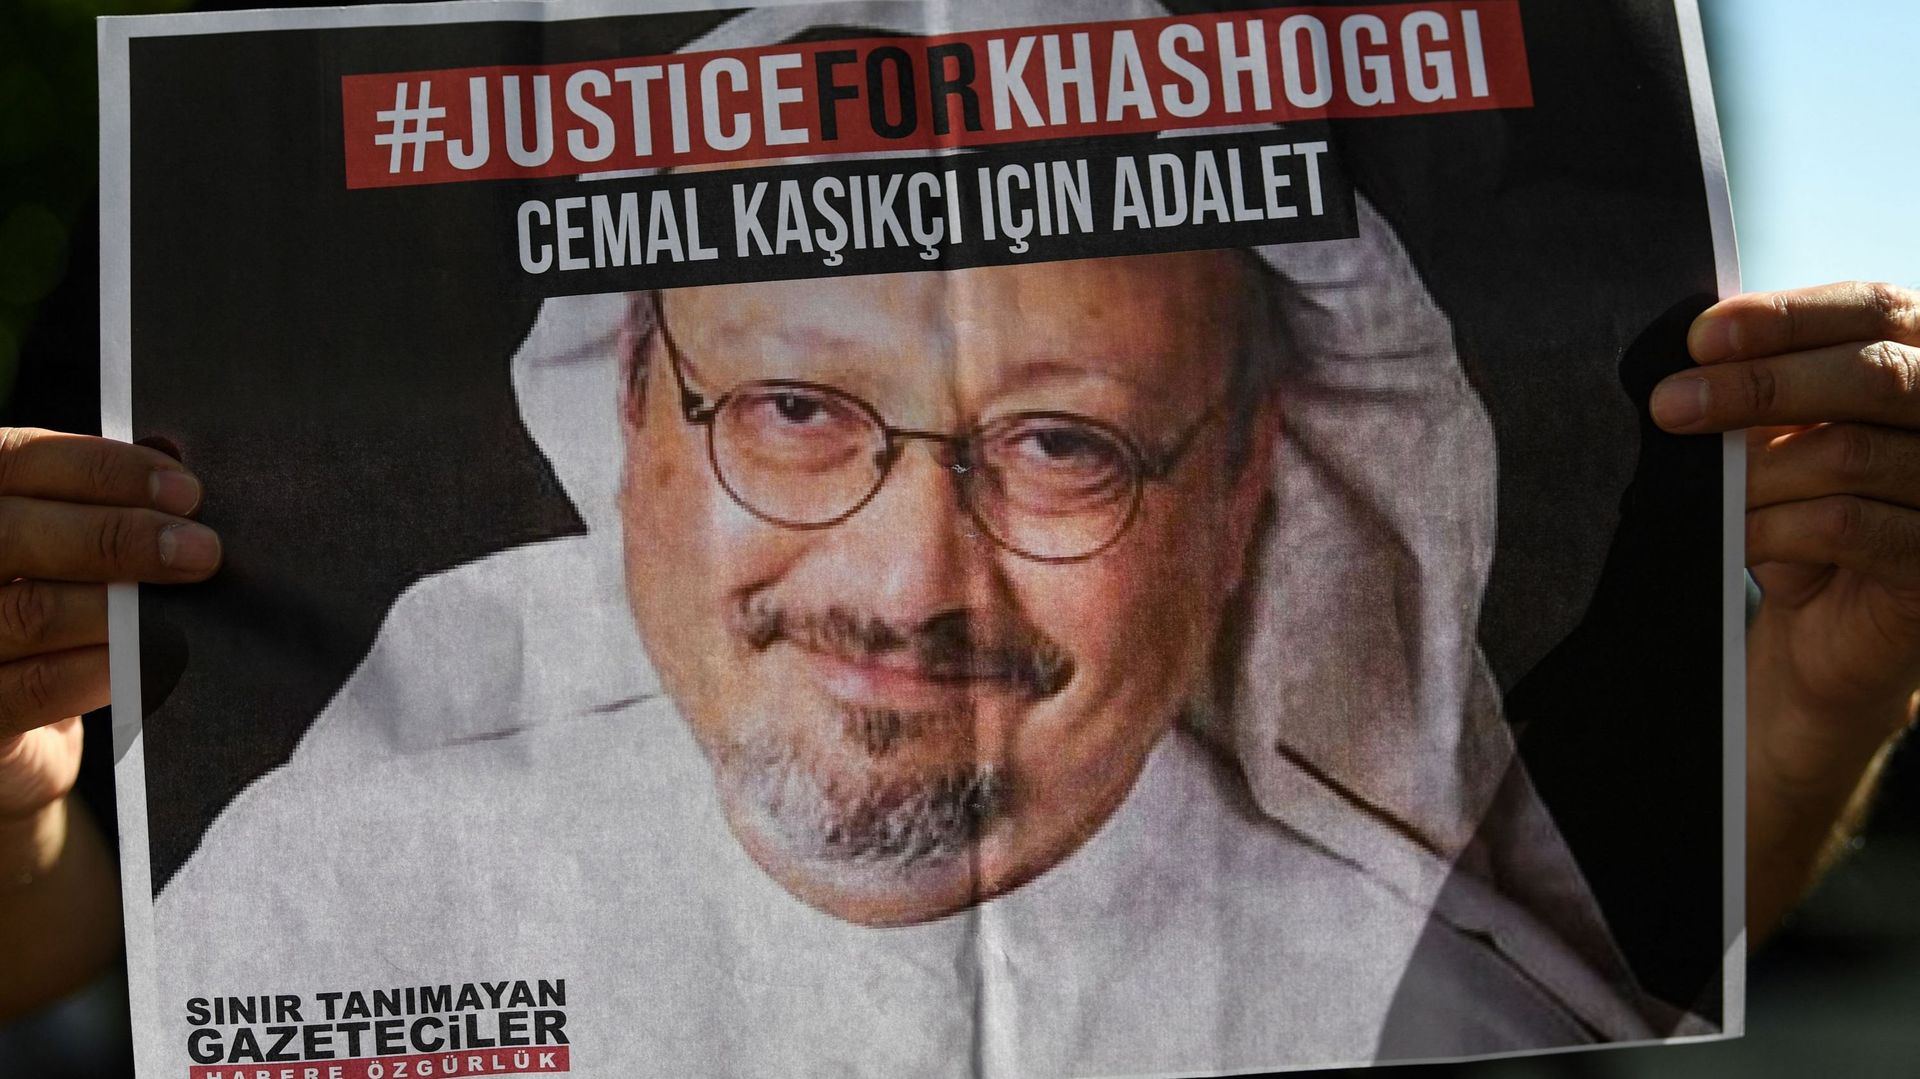 Le meurtre du journaliste Jamal Khashoggi a mobilisé les ONG